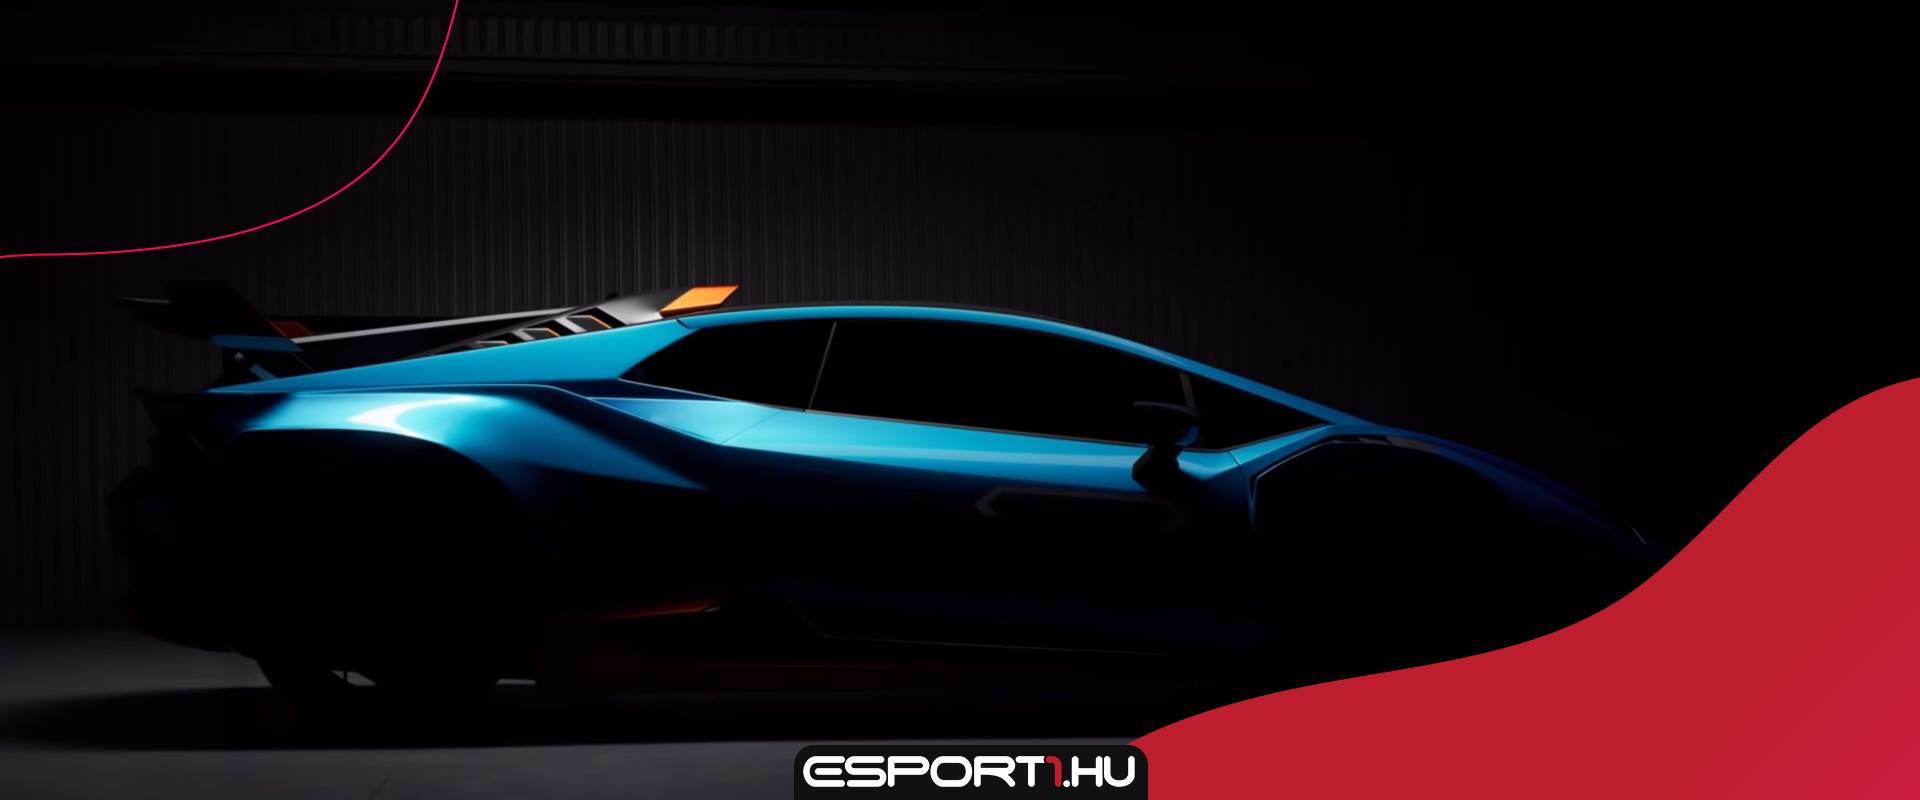 Hamarosan Lamborghinivel is repkedhetnek a Rocket League játékosok